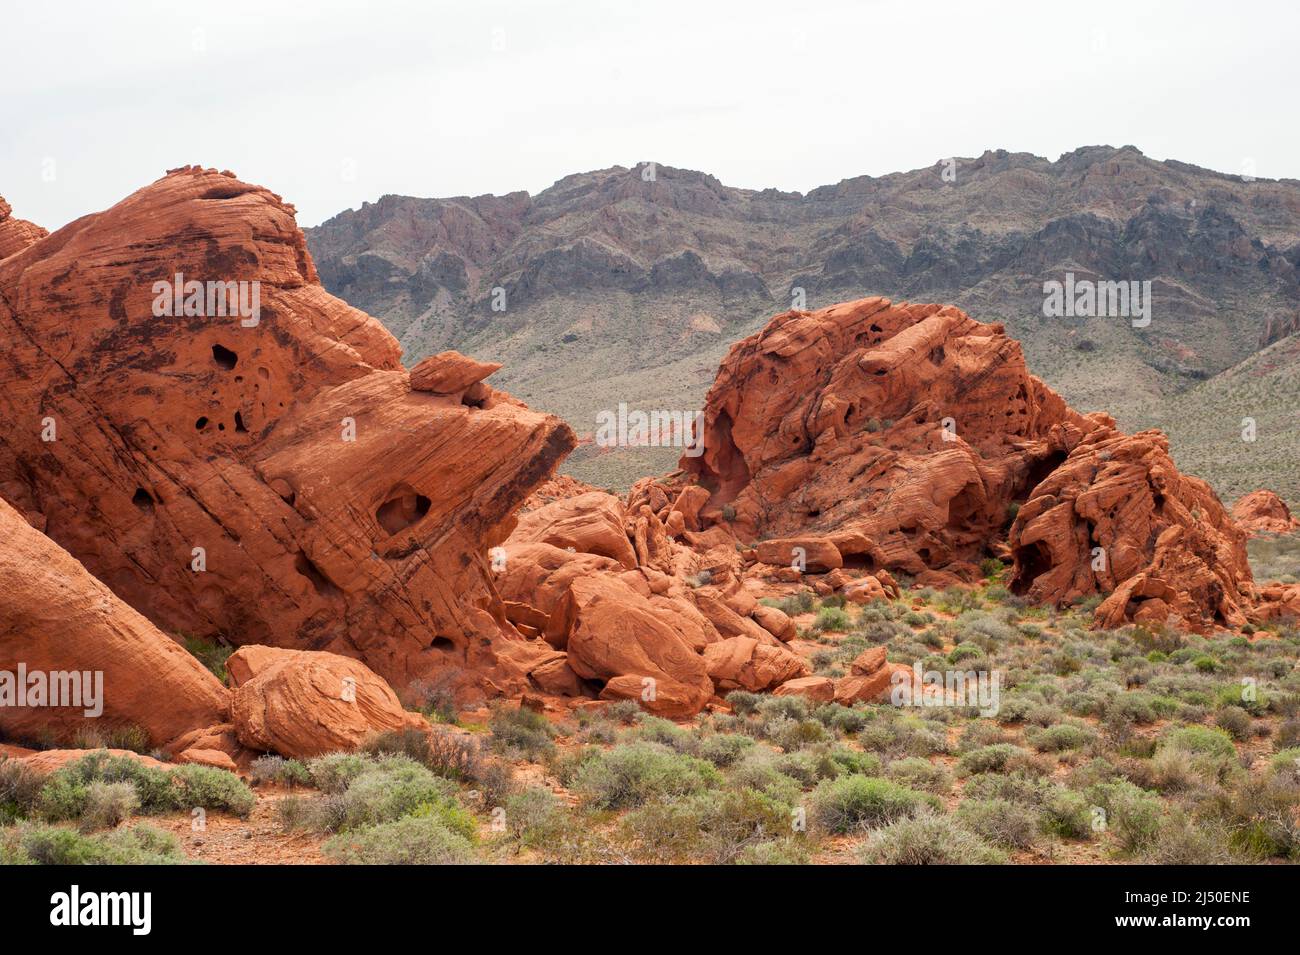 Piedra arenisca azteca y acantilados de piedra caliza del Parque Estatal Valley of Fire, Nevada. Foto de stock